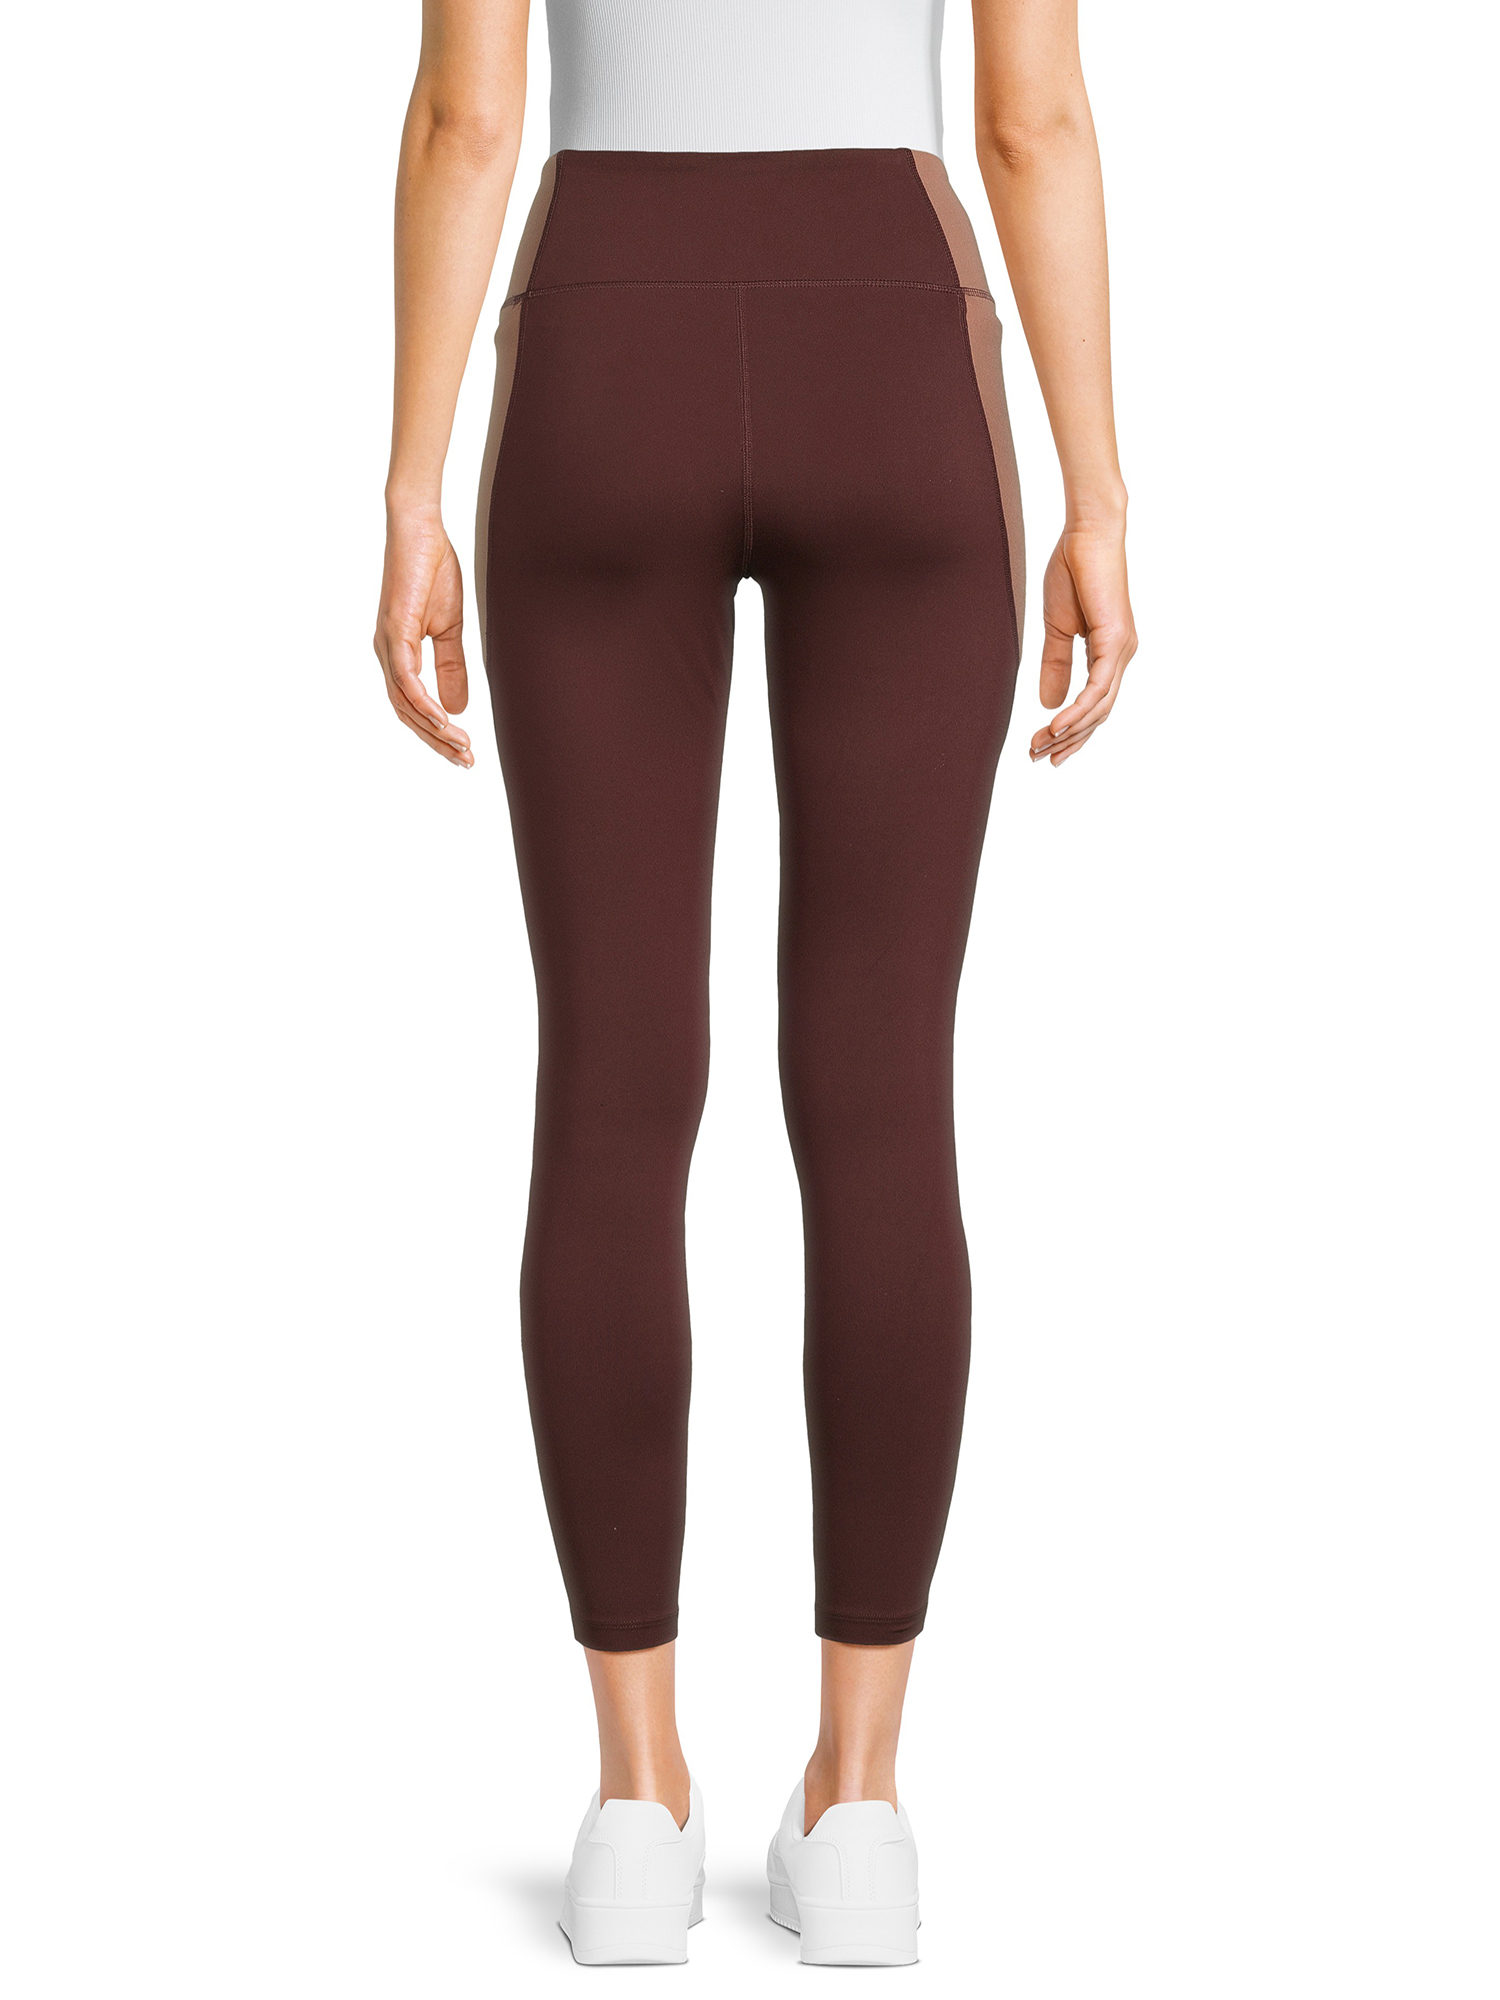 Buy Hajmeera Styles Women's Leggings (XL Size, 4 Way Leggin Pant) (Brown  Color) at